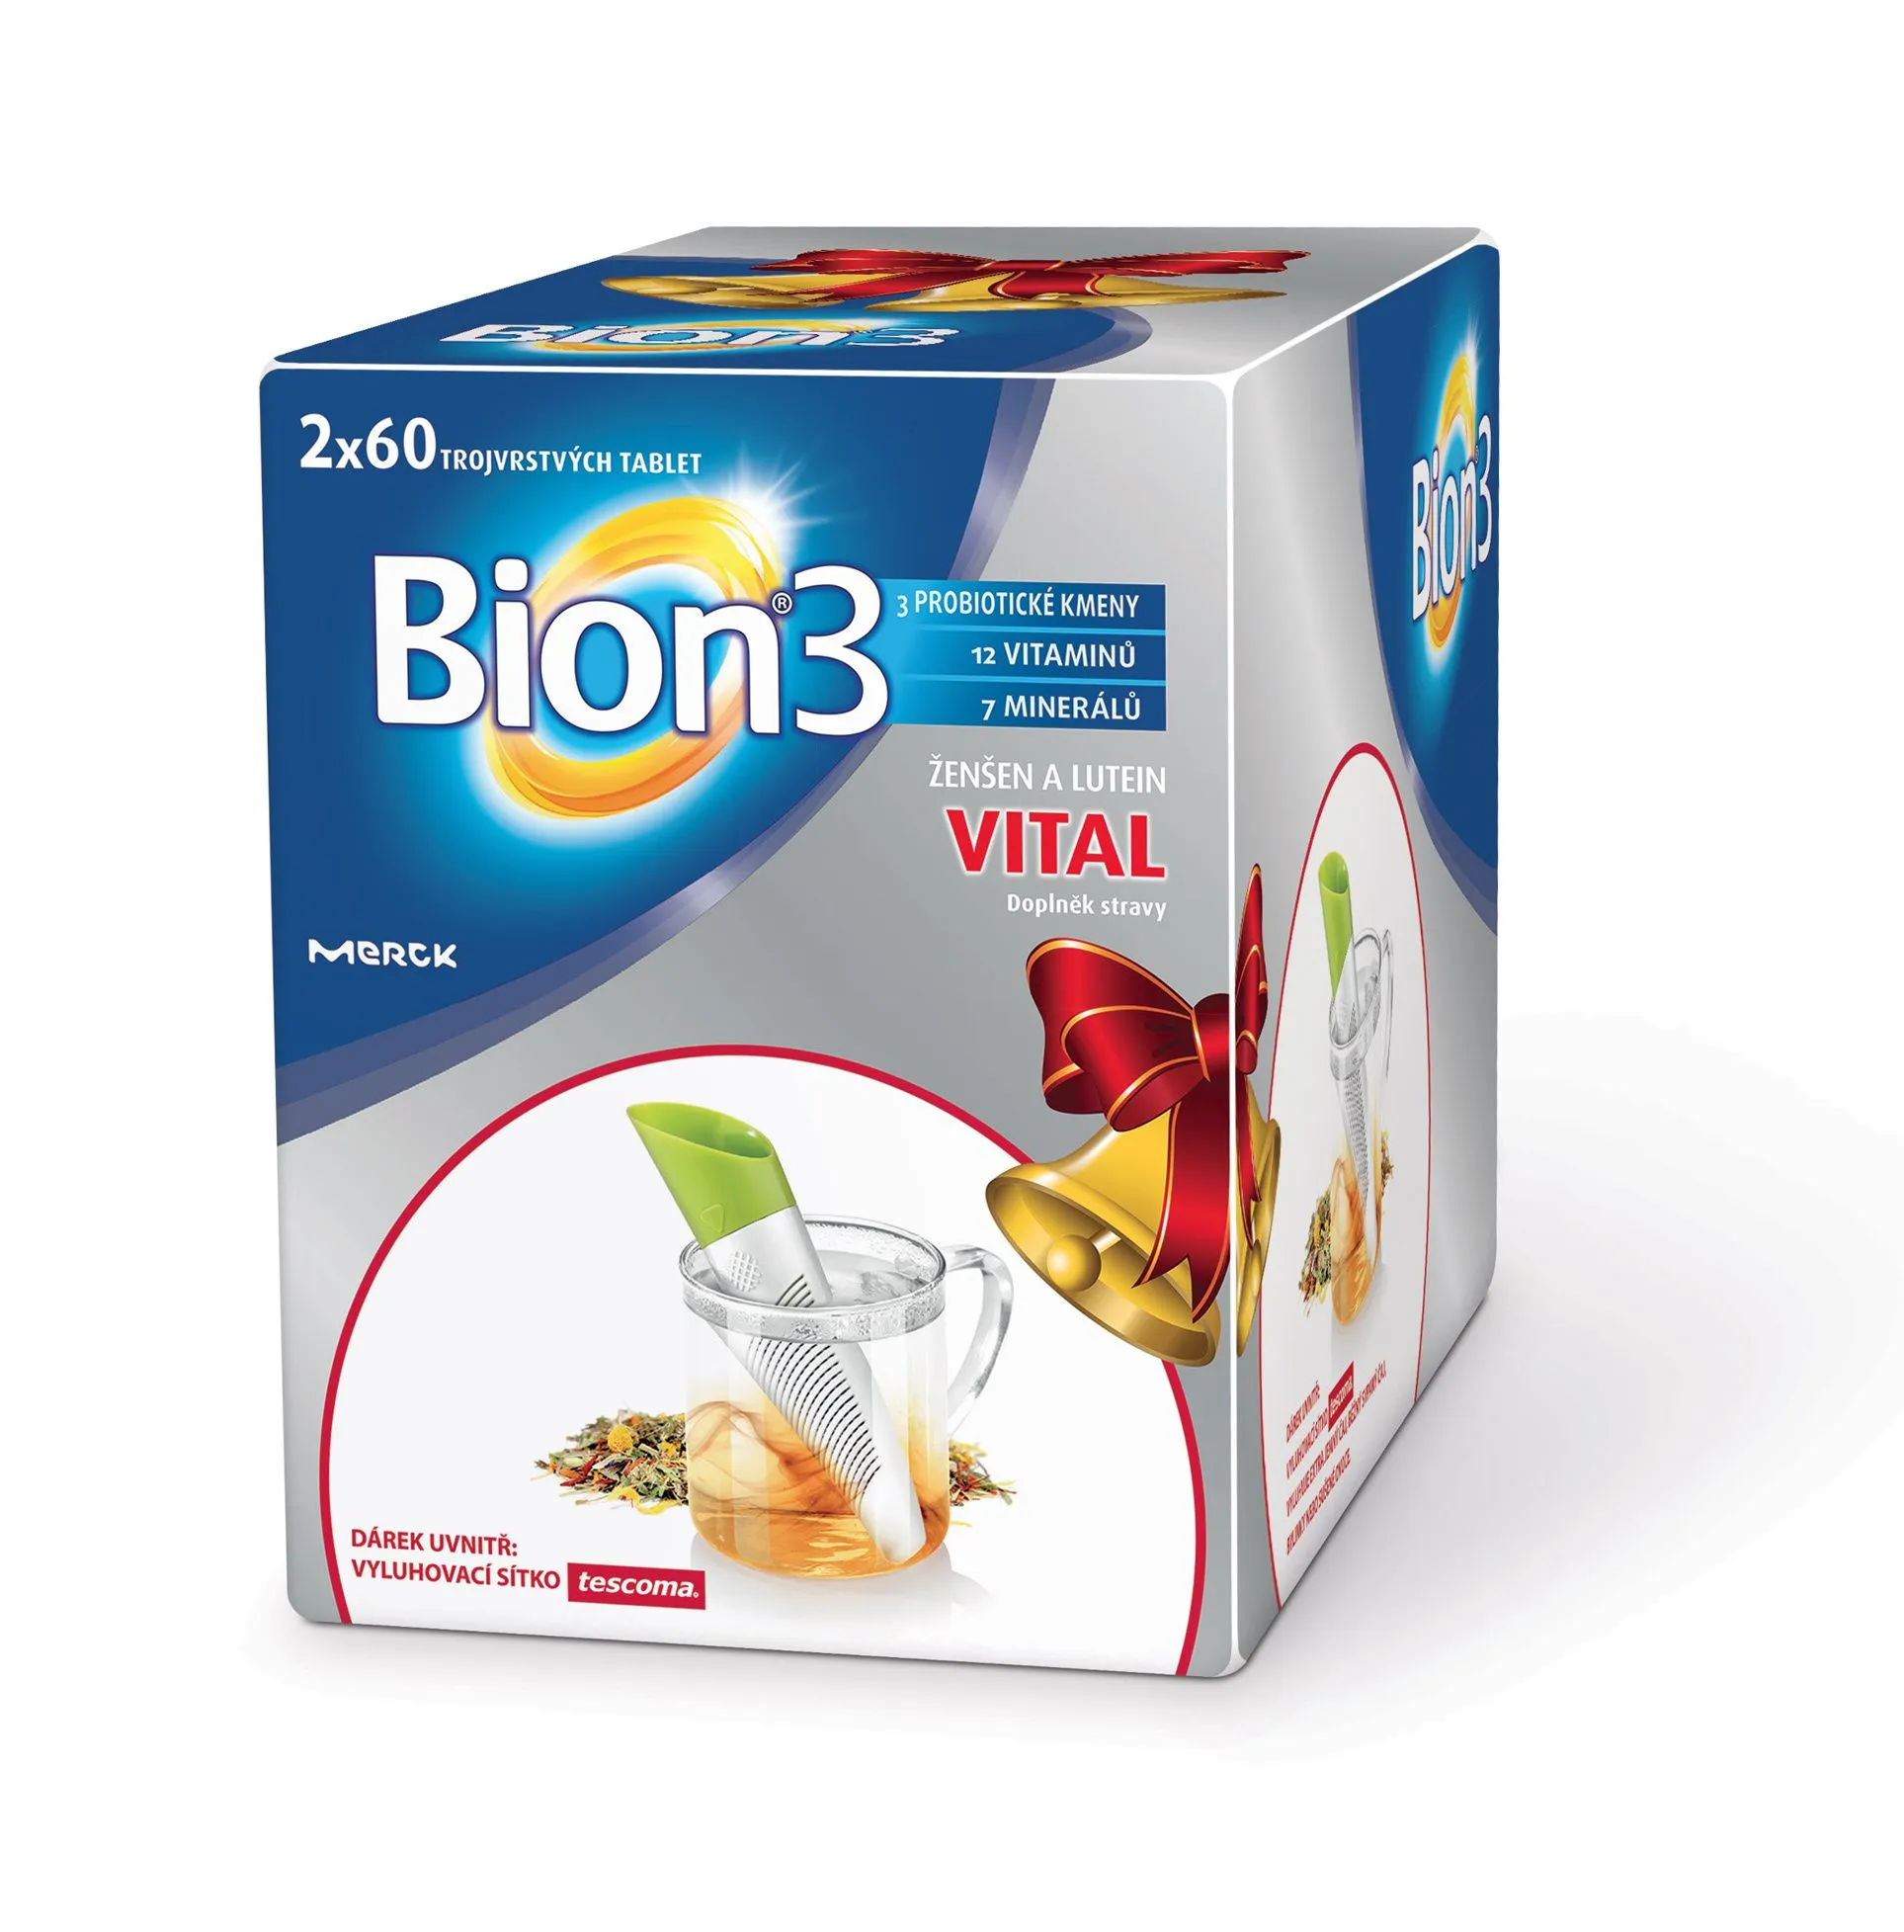 Bion 3 Vital tbl.60 dvojbalení + dárek